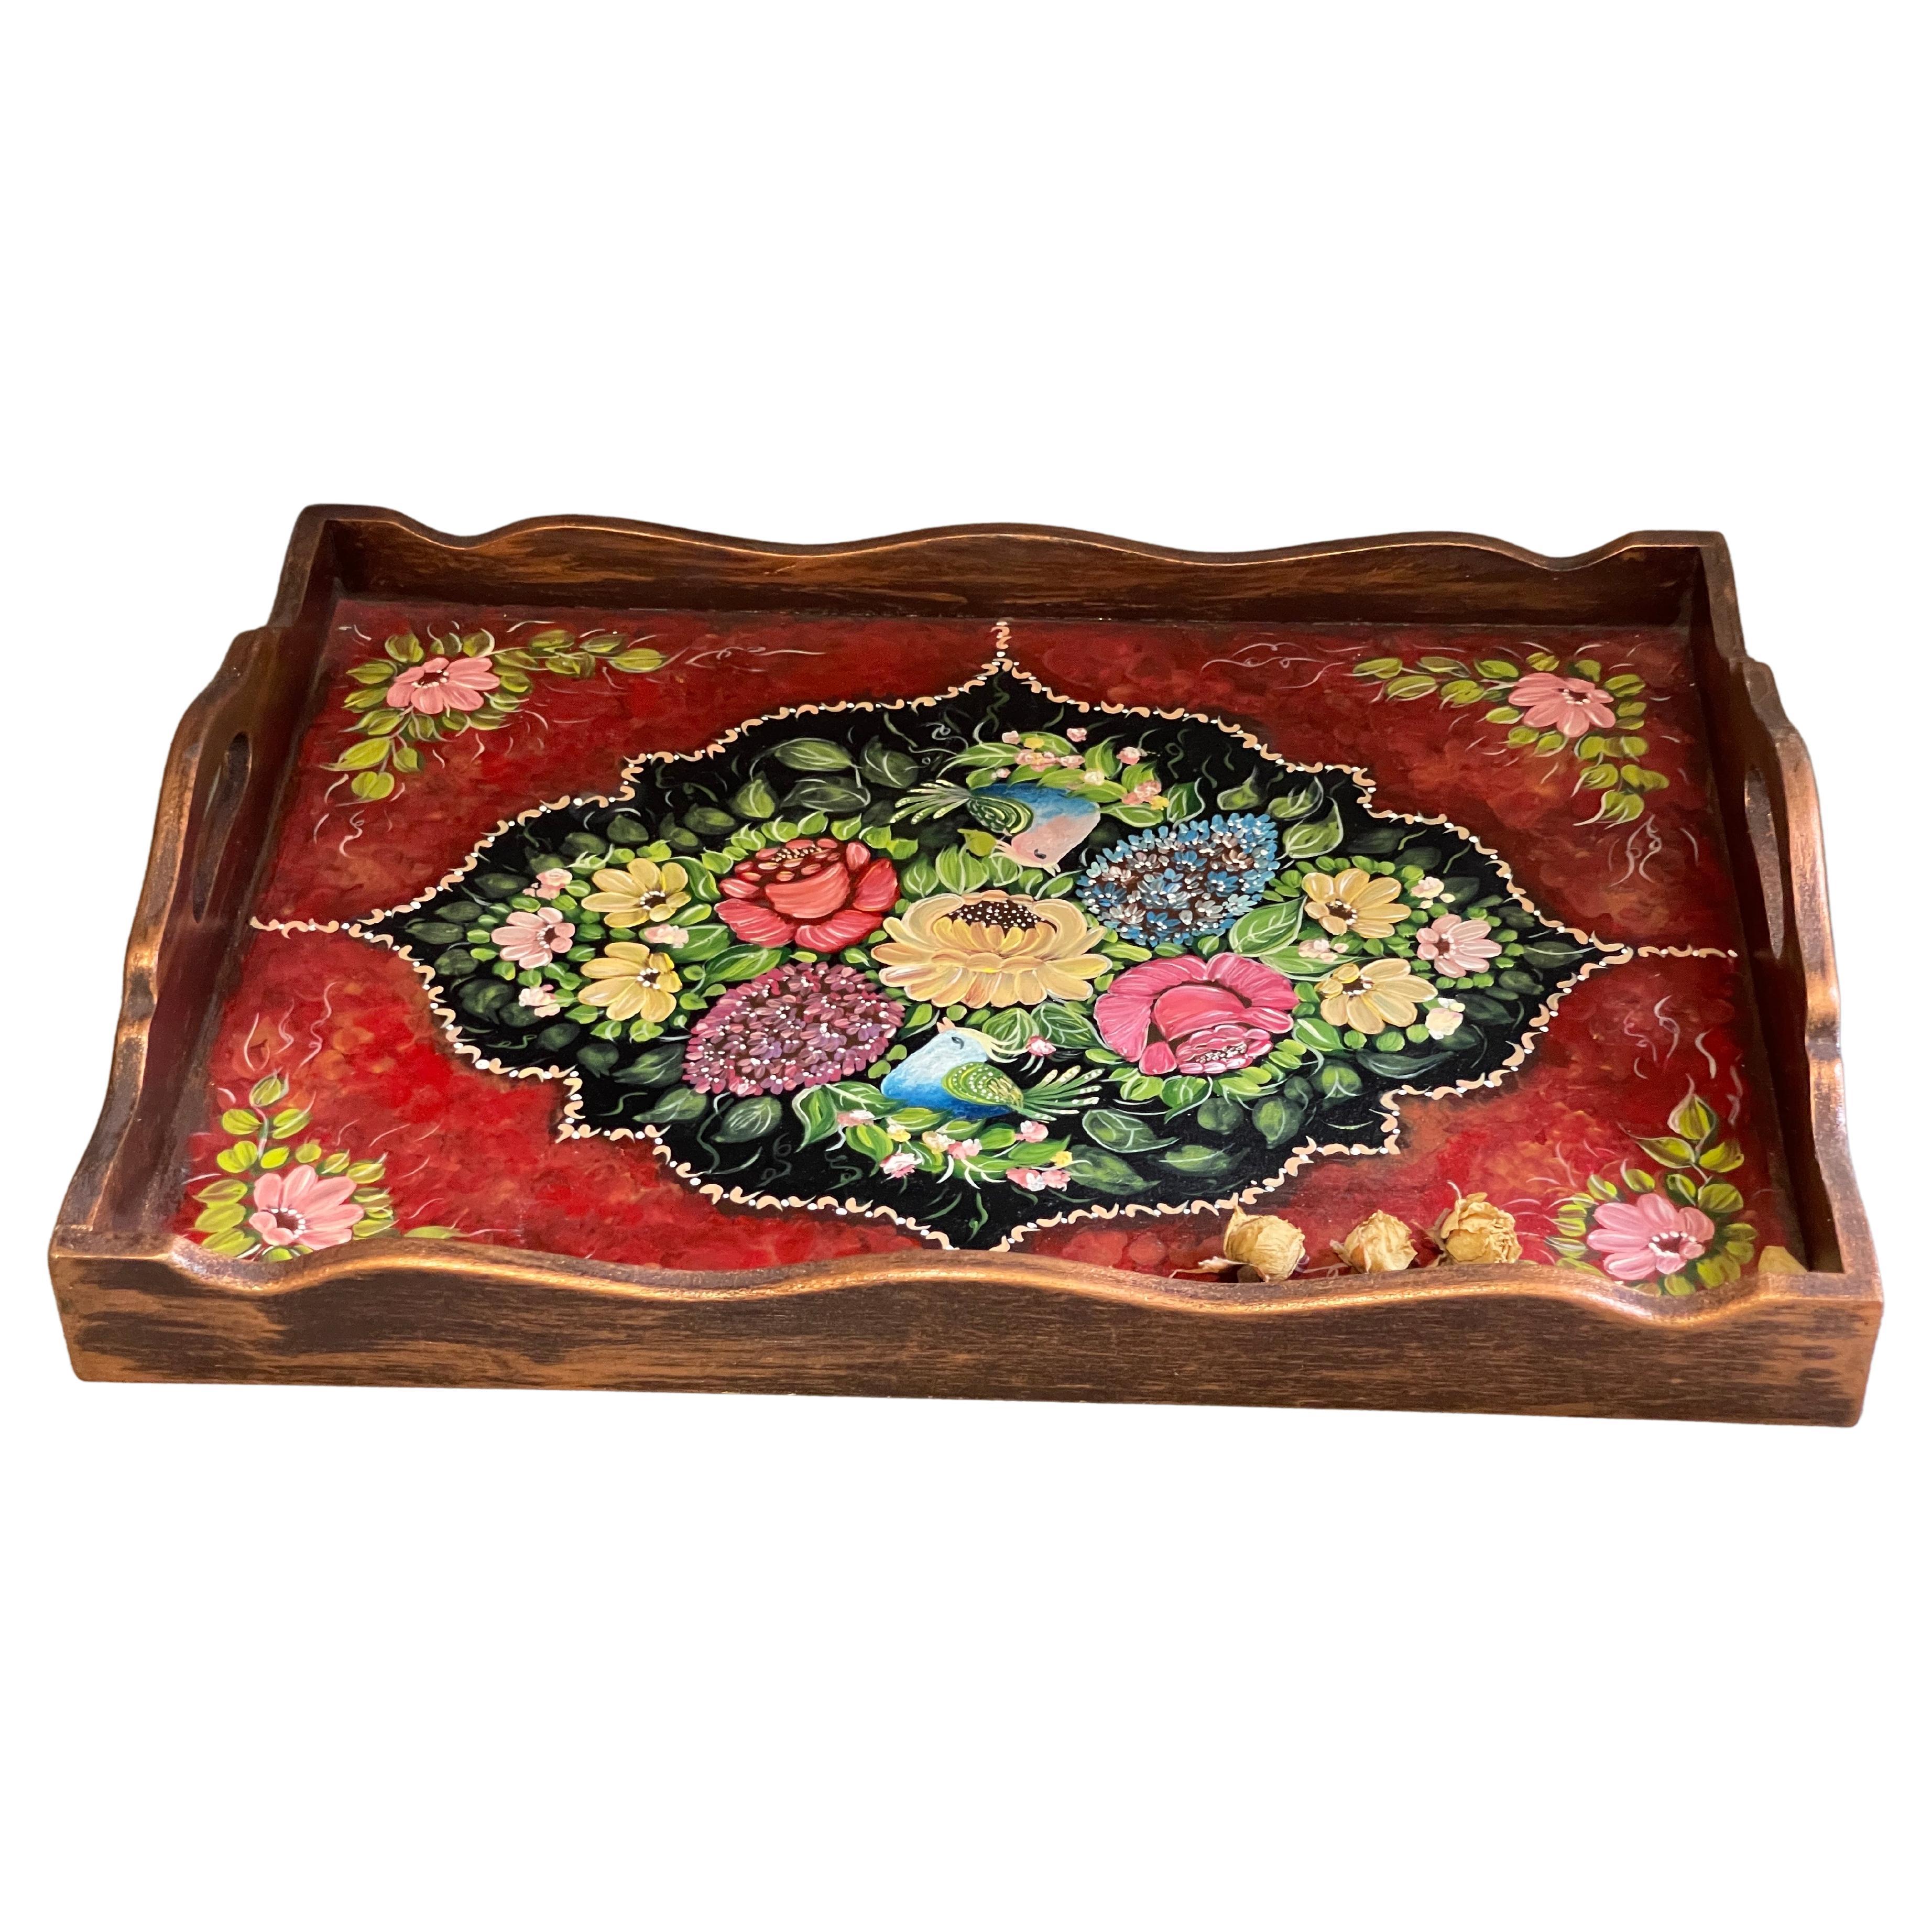 Orientalisches Vintage-Teetablett mit Blumen- und Hühnermuster, handbemalt, Holzserviertablett